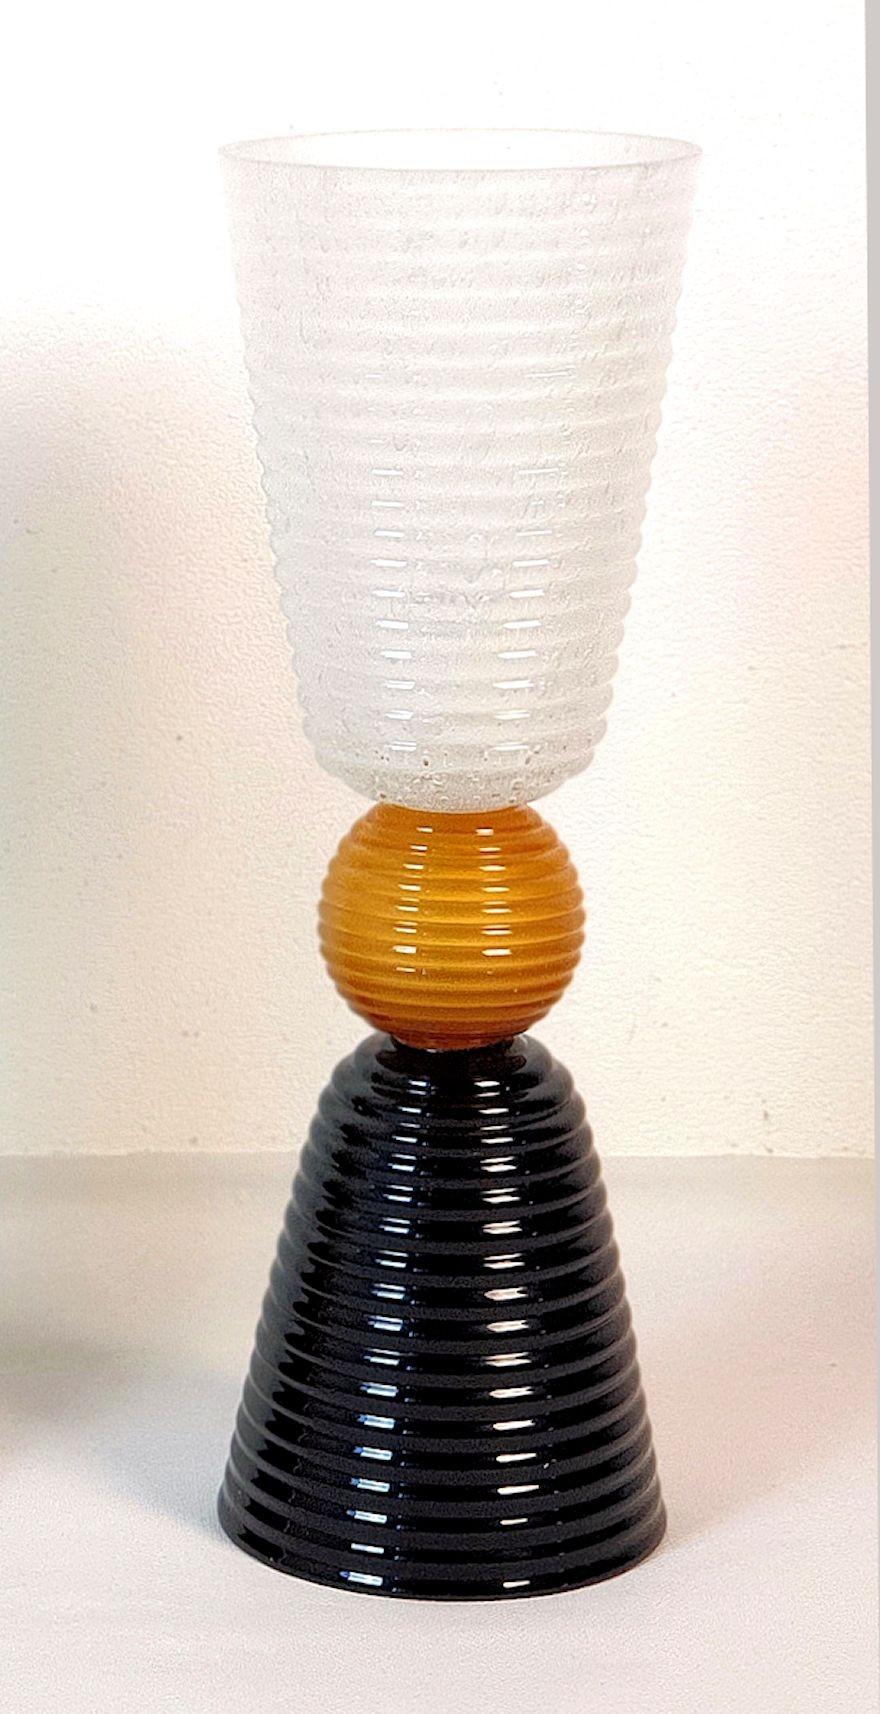 Moderne Murano-Glas-Tischlampe aus der Jahrhundertmitte, Italien 1980er Jahre.
Die italienische Tischlampe ist aus schwarzem und weißem geripptem Murano-Glas gefertigt, mit einer zentralen honigfarbenen Murano-Glaskugel.
Die Glühbirne ist in der